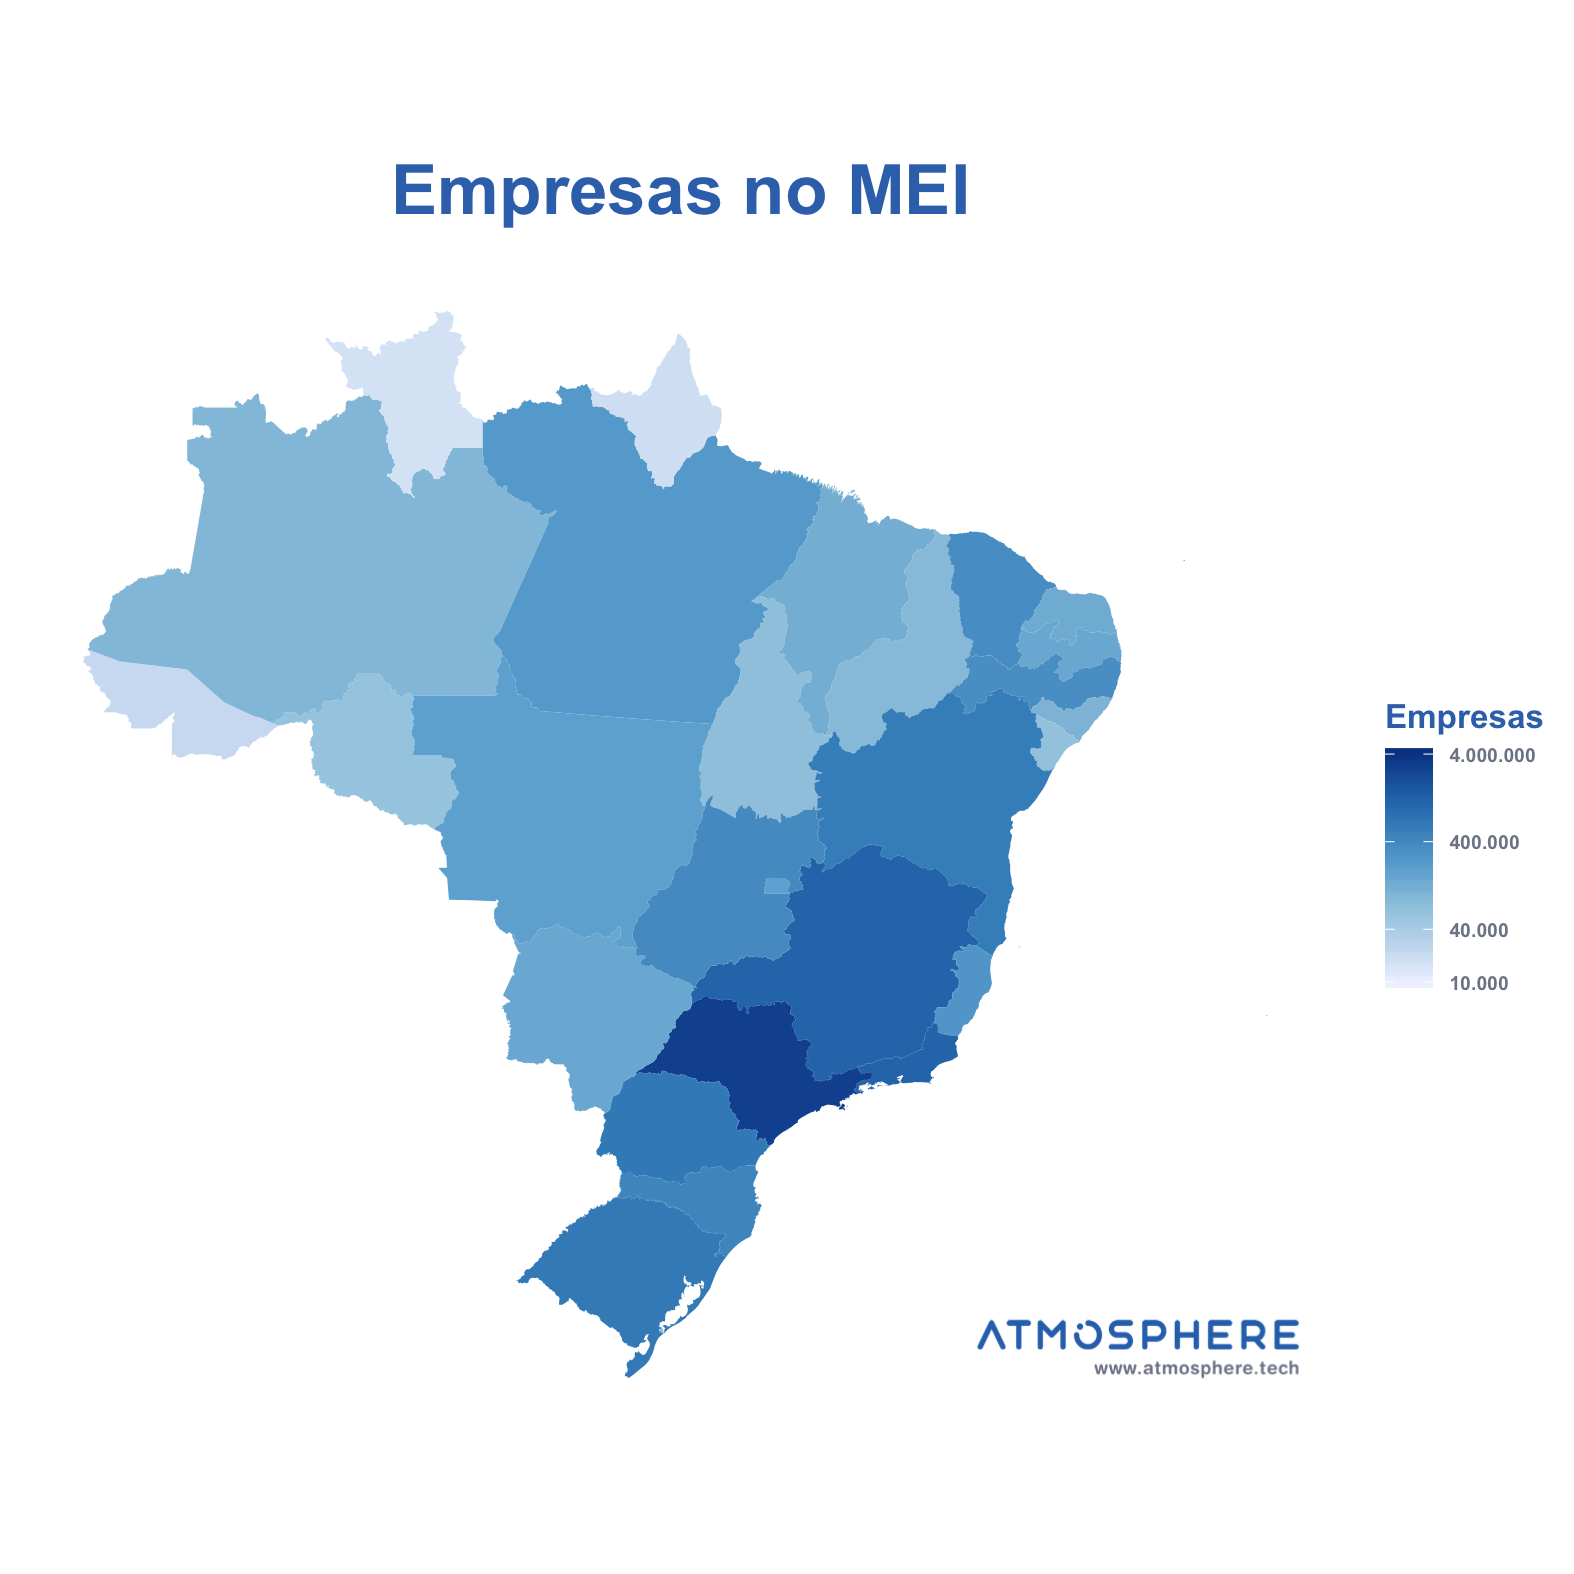 Oportunidados Empresas no MEI por Estado no Brasil